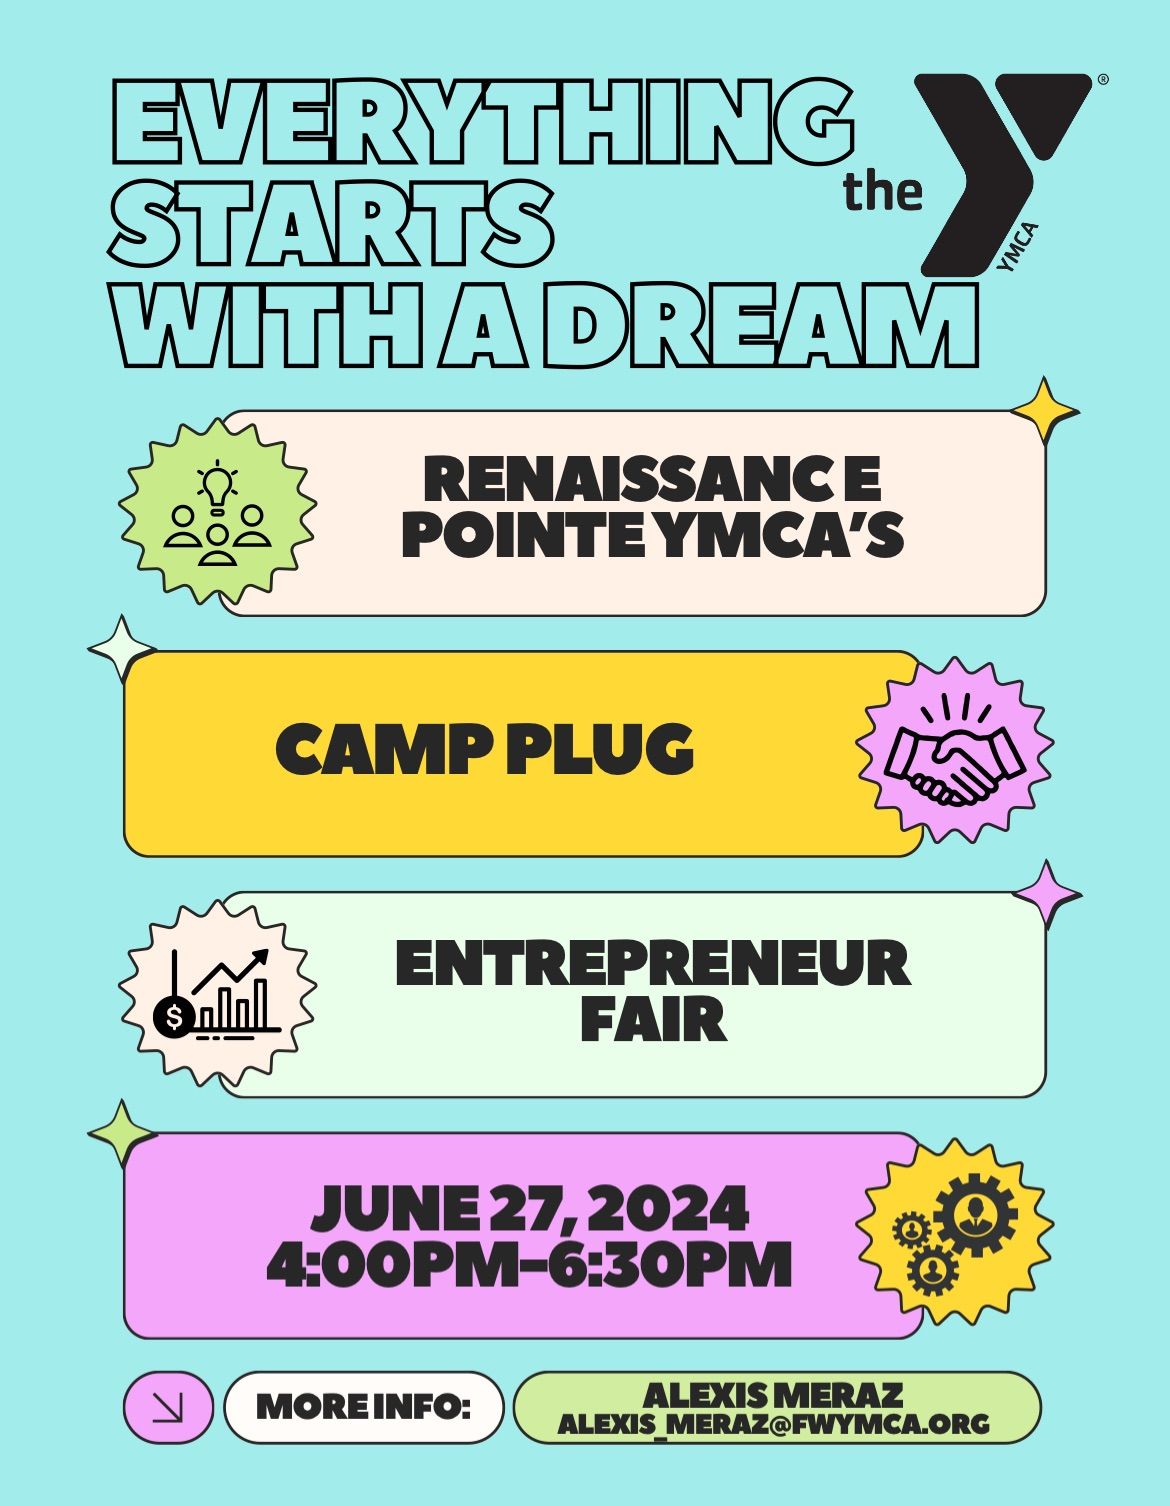 Entrepreneur Fair- TEEN Camp Plug